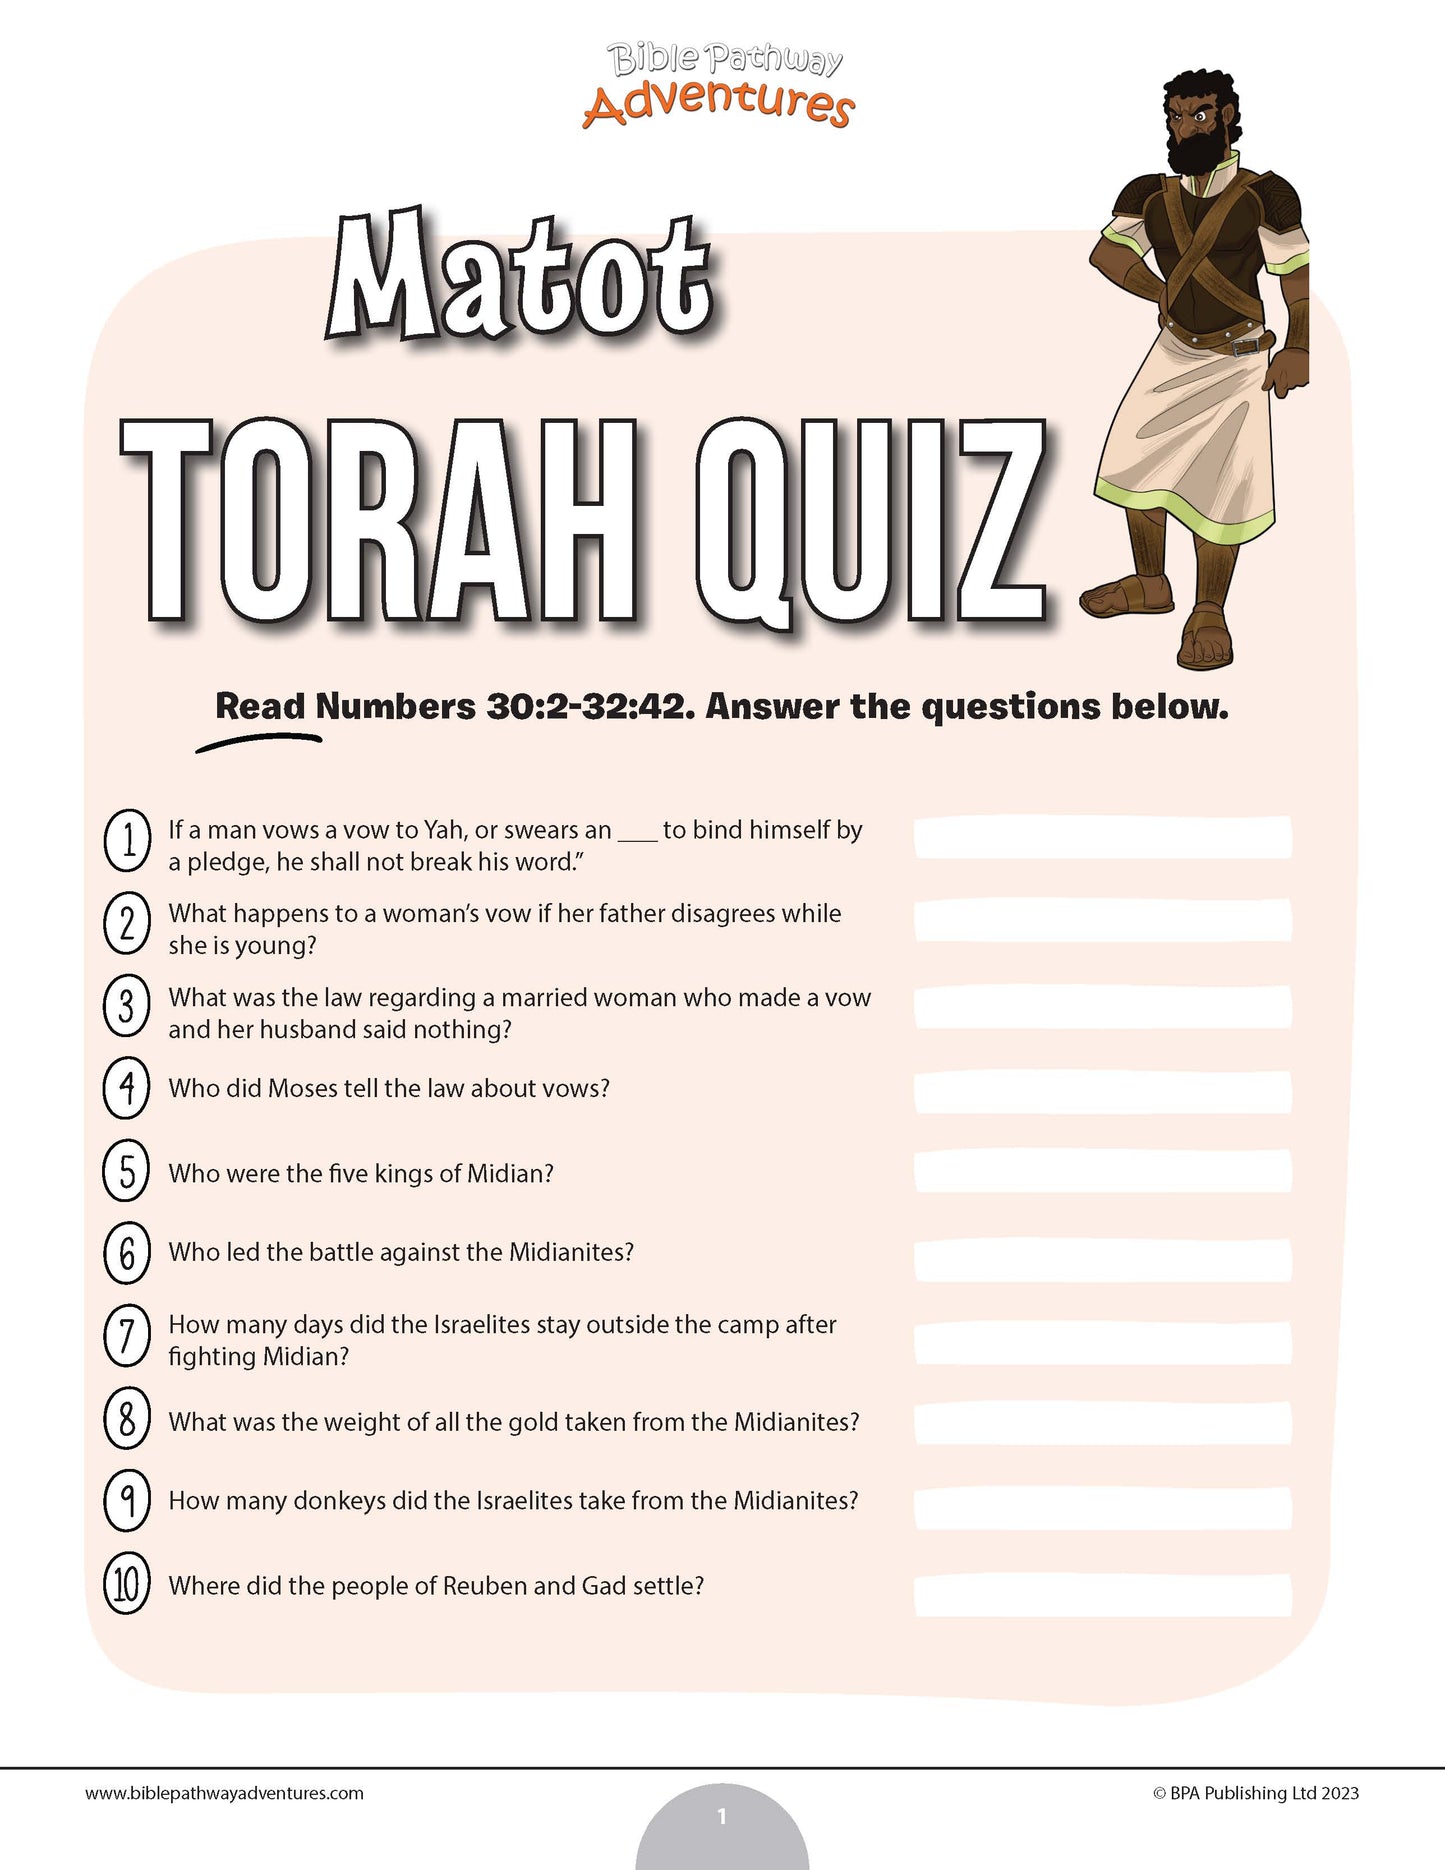 Matot Torah quiz (PDF)